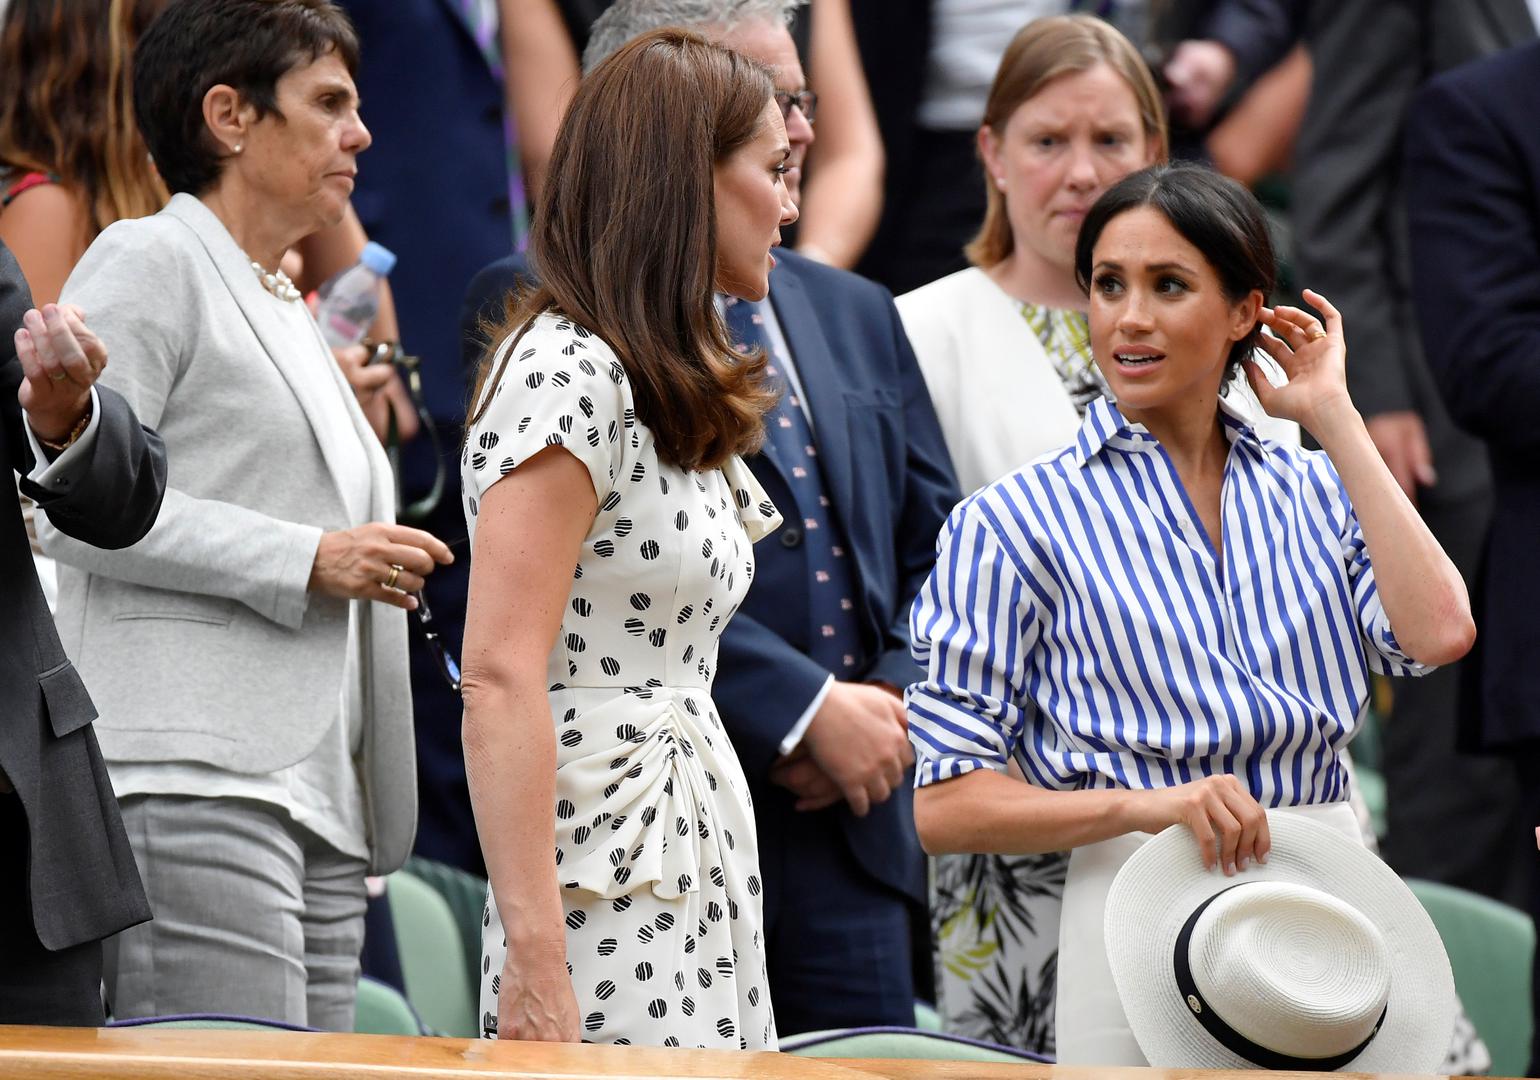 Kate Middleton i Meghan Markle danas su došle gledati žensko finale Wimbledona iz kraljevske lože i ovo je prvi puta da su se dvije vojvotkinje zajedno pojavila u javnosti bez svojih muževa.